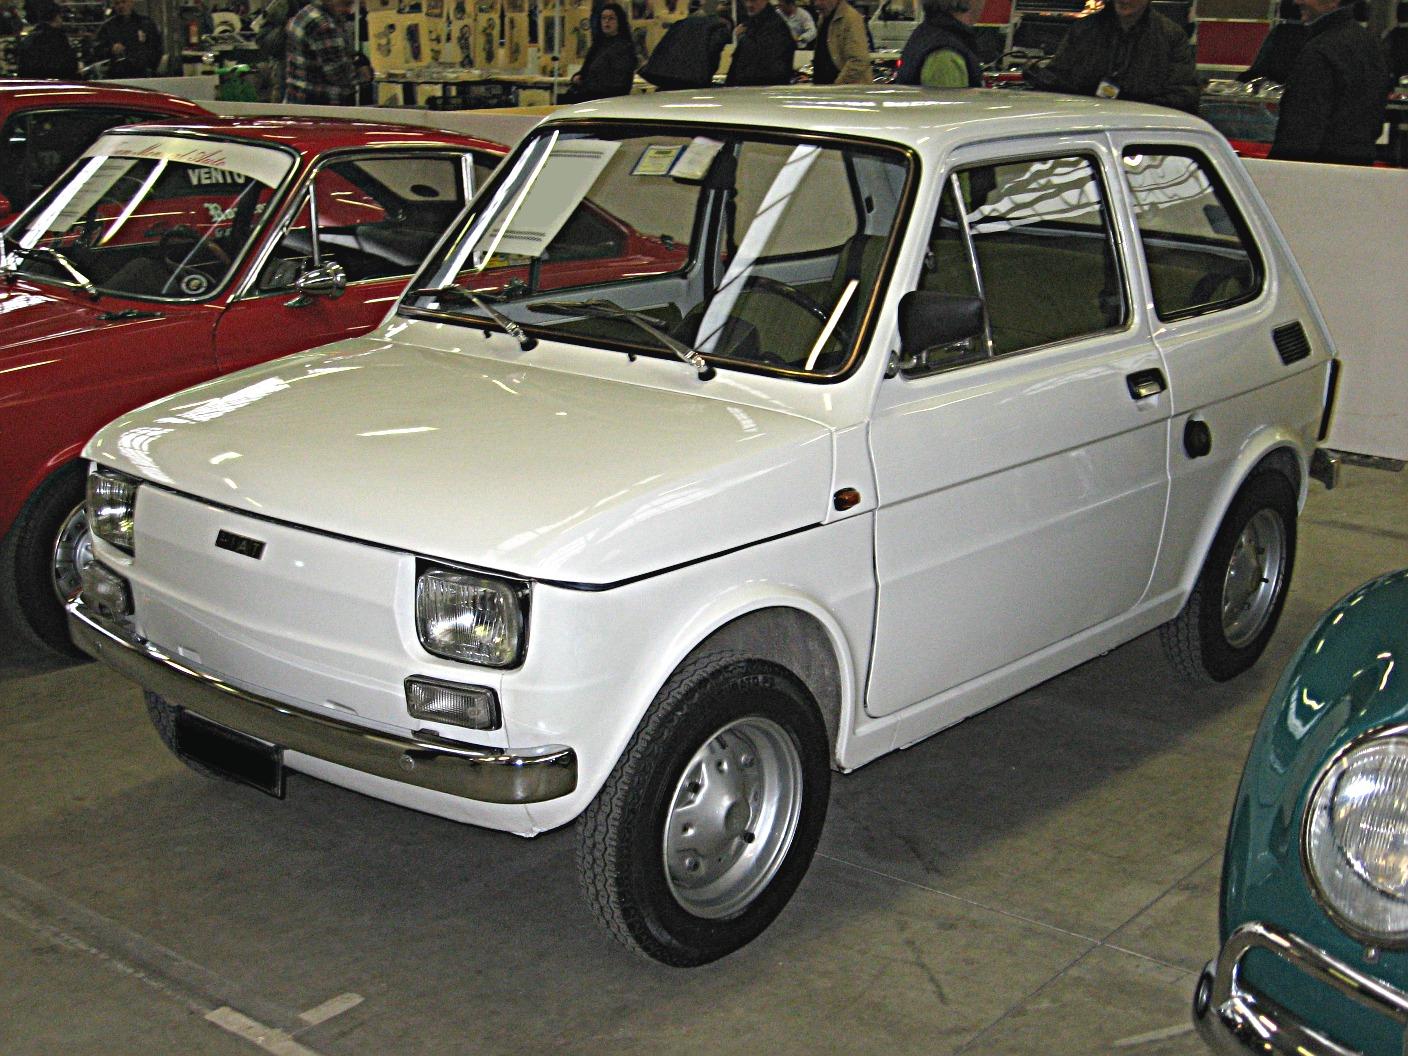 Fiat 126 600